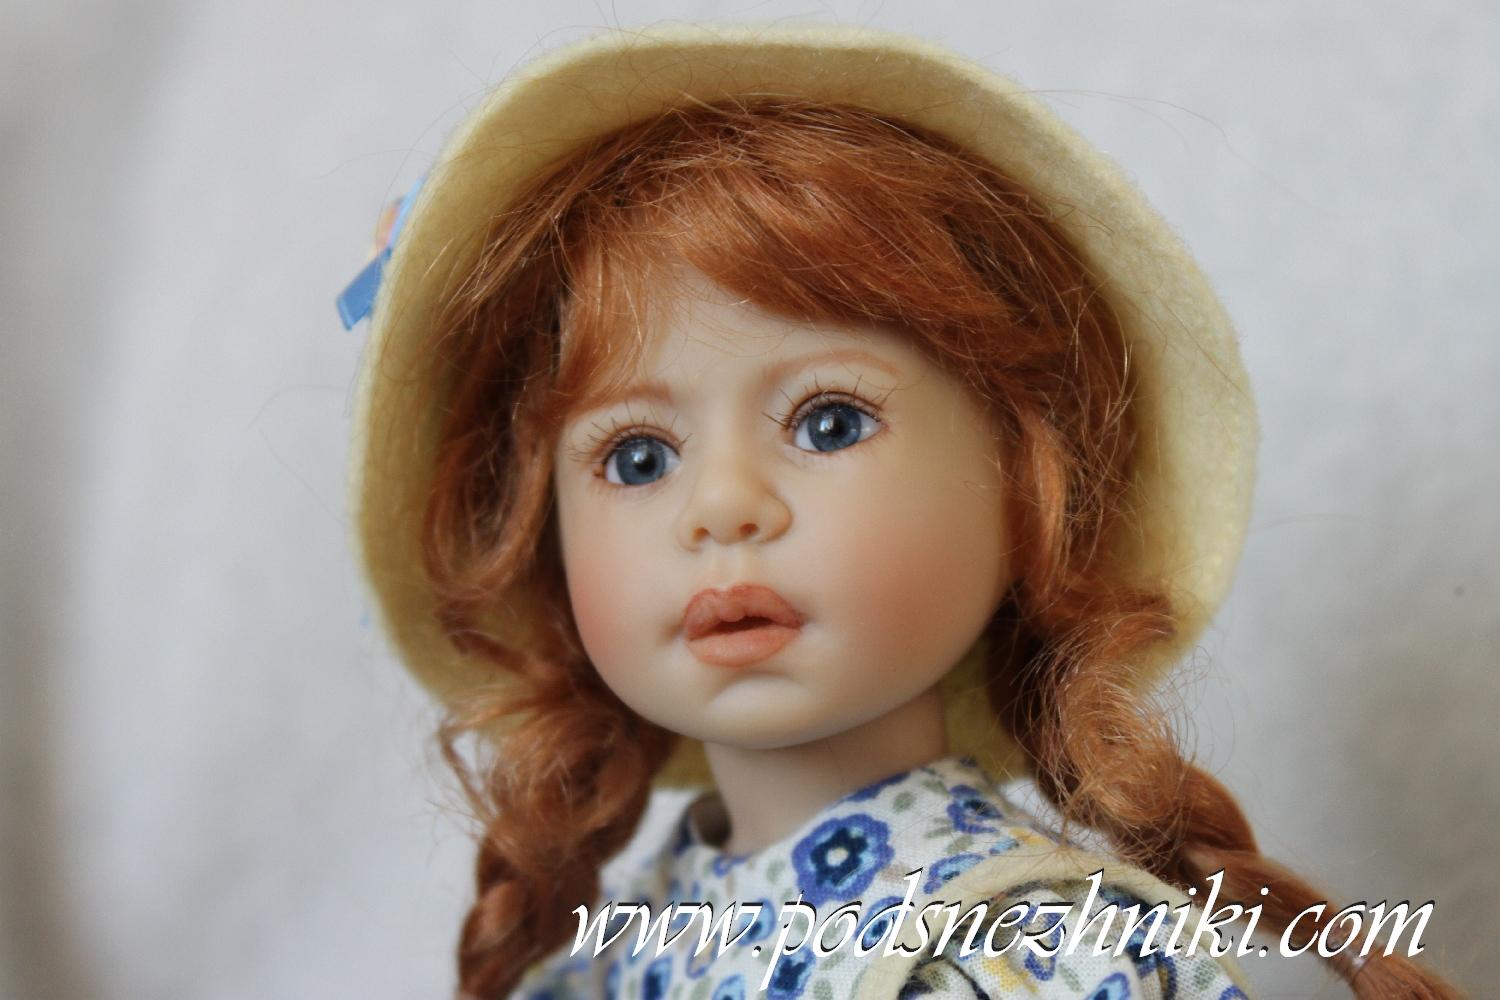 Студийная коллекционная виниловая кукла Peppina от Heidi Plusczok, коллекция 2016 года